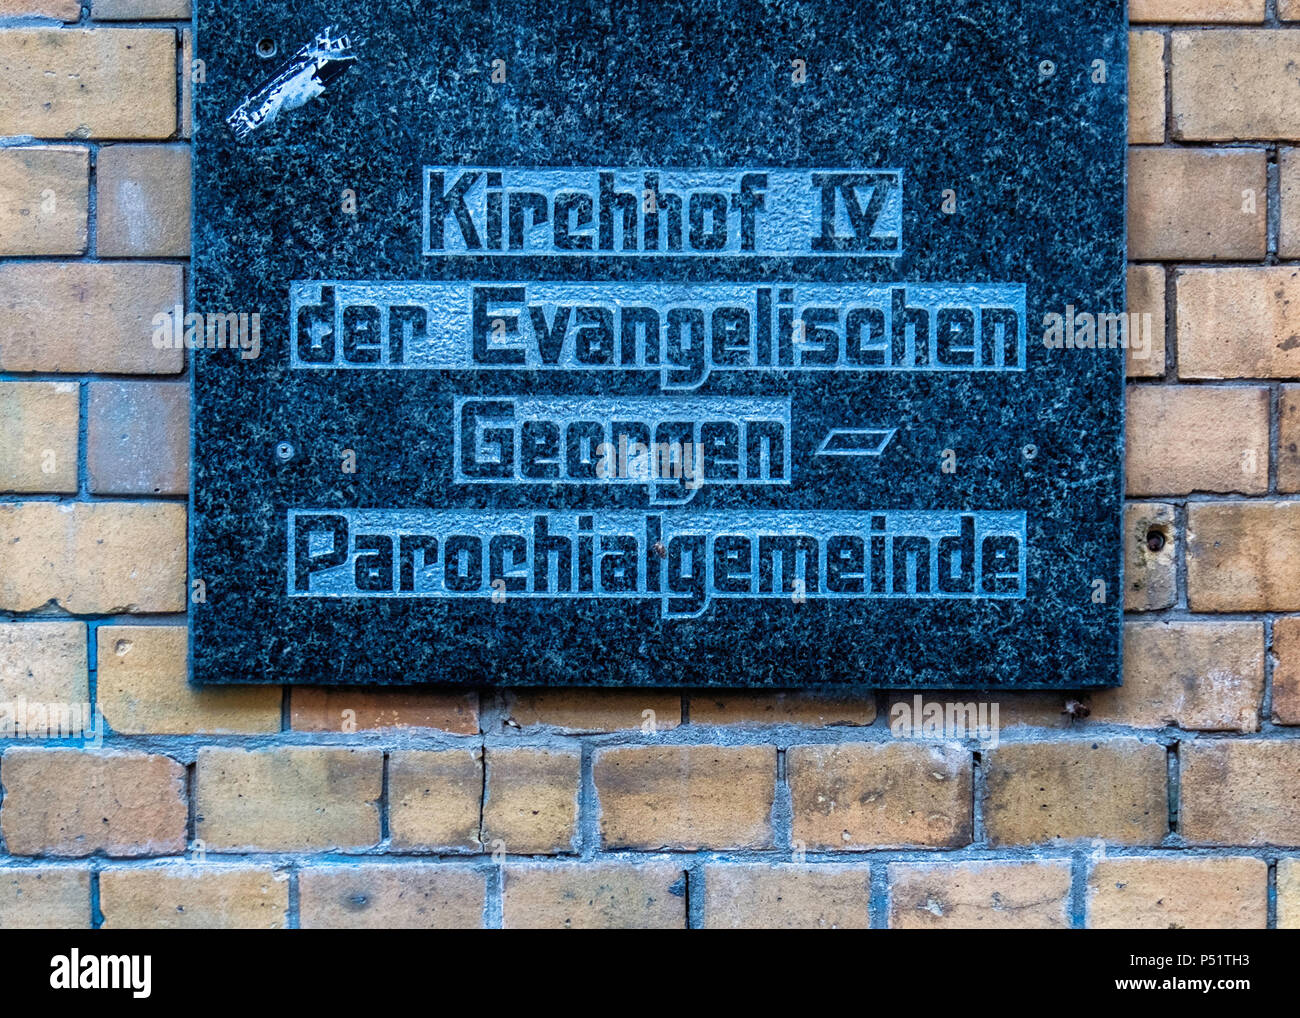 Kirchhof Vl der Evangelischen Georgen. Parochialgemeinde Cimetière signe sur mur de brique jaune dans Boxhagener Strasse, Friedrichshain, Berlin Banque D'Images